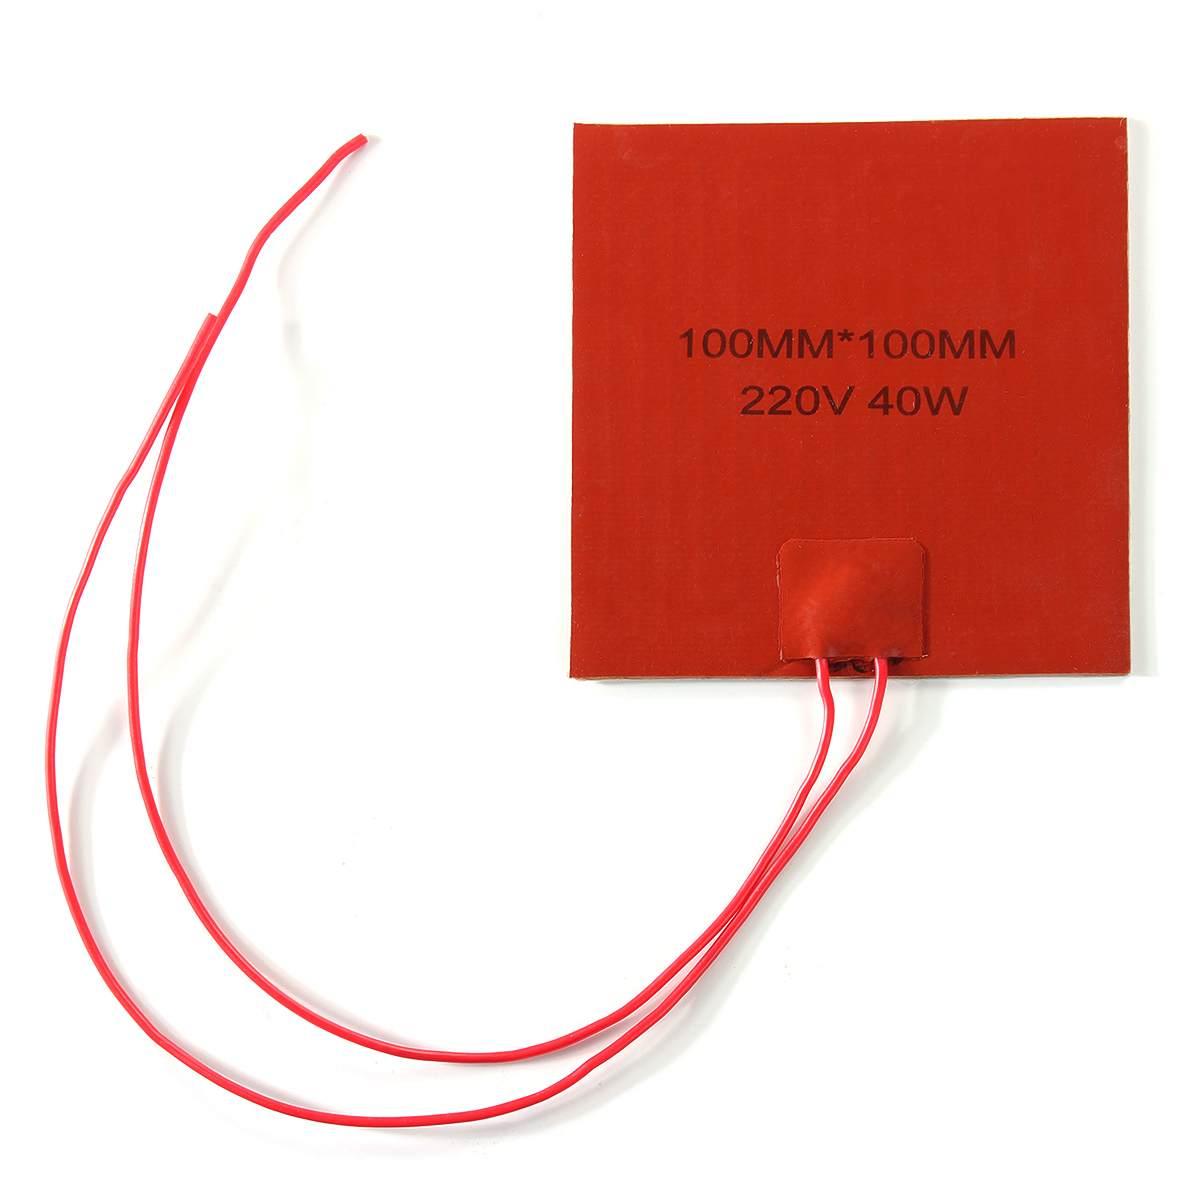 элемент нагревательный силиконовый 220V, 40W, 100x100mm гибкий